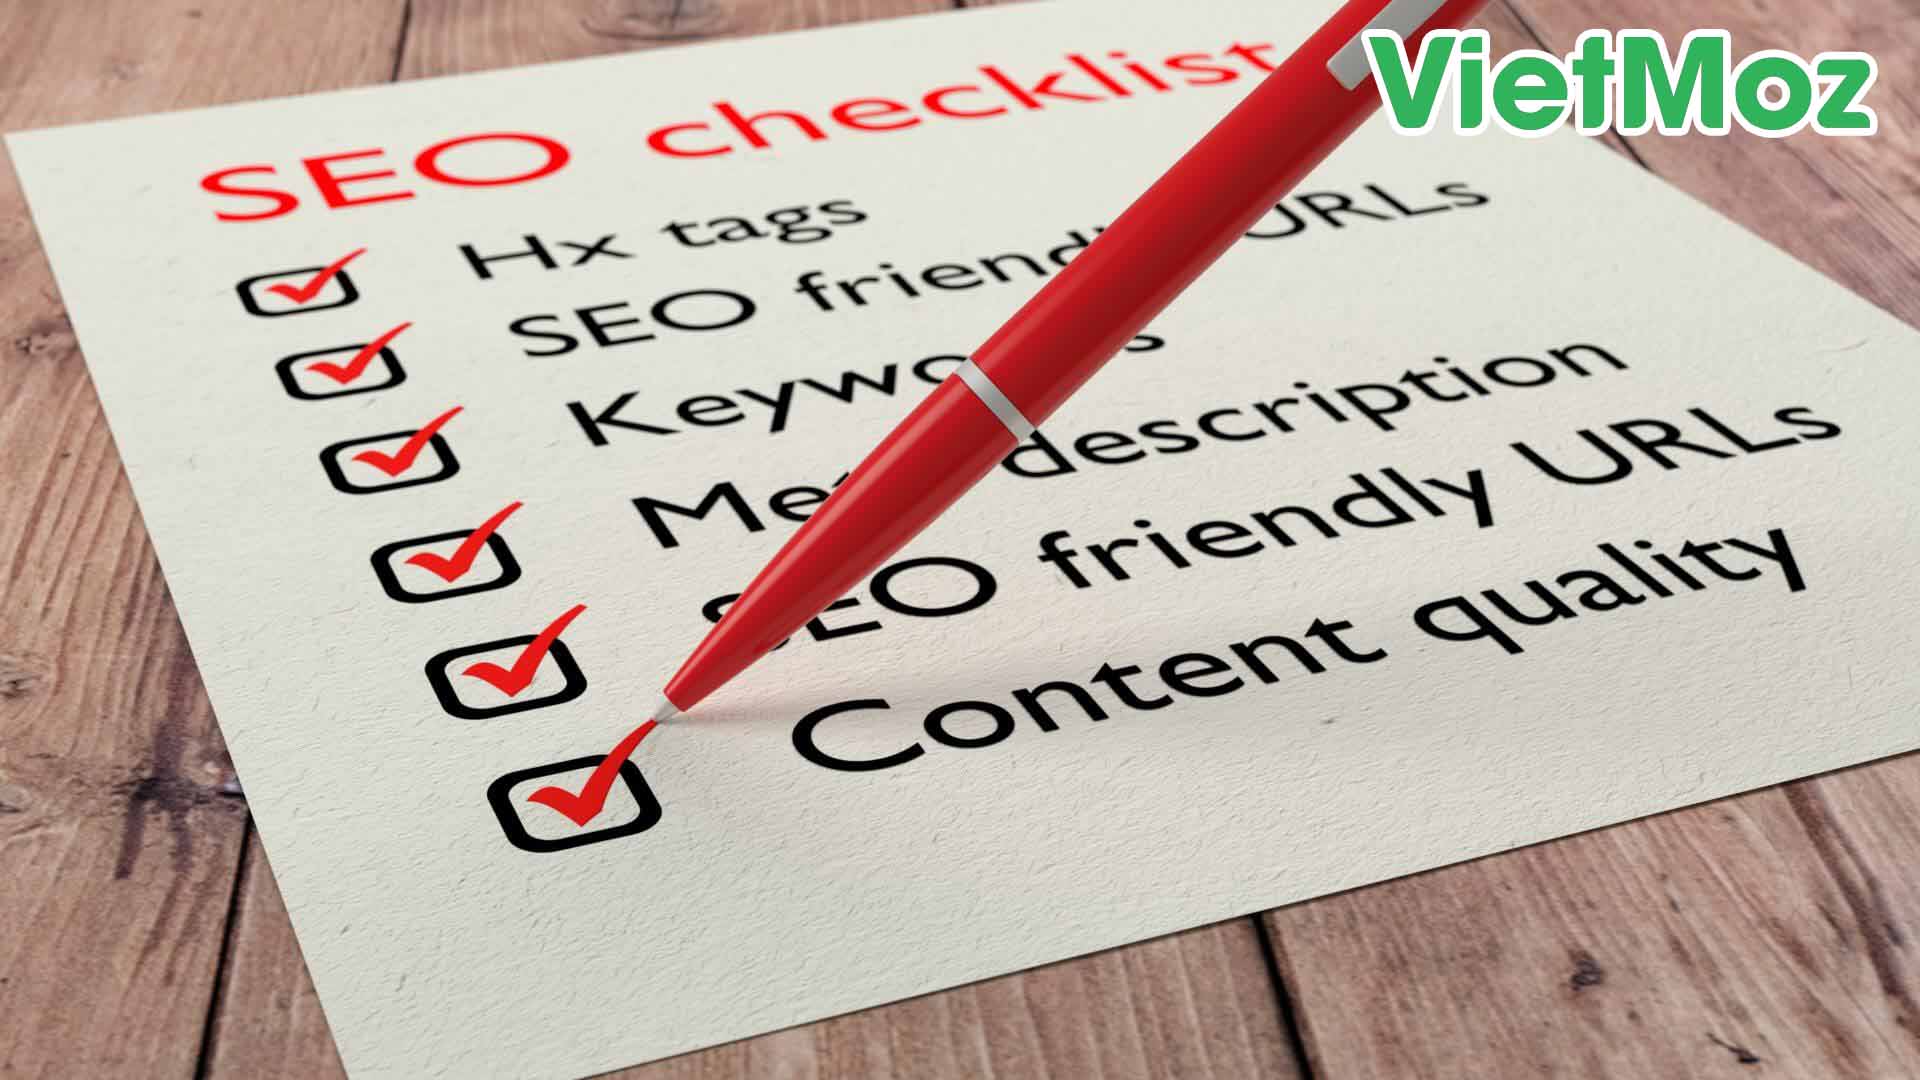 Vietmoz - youtube seo checklist